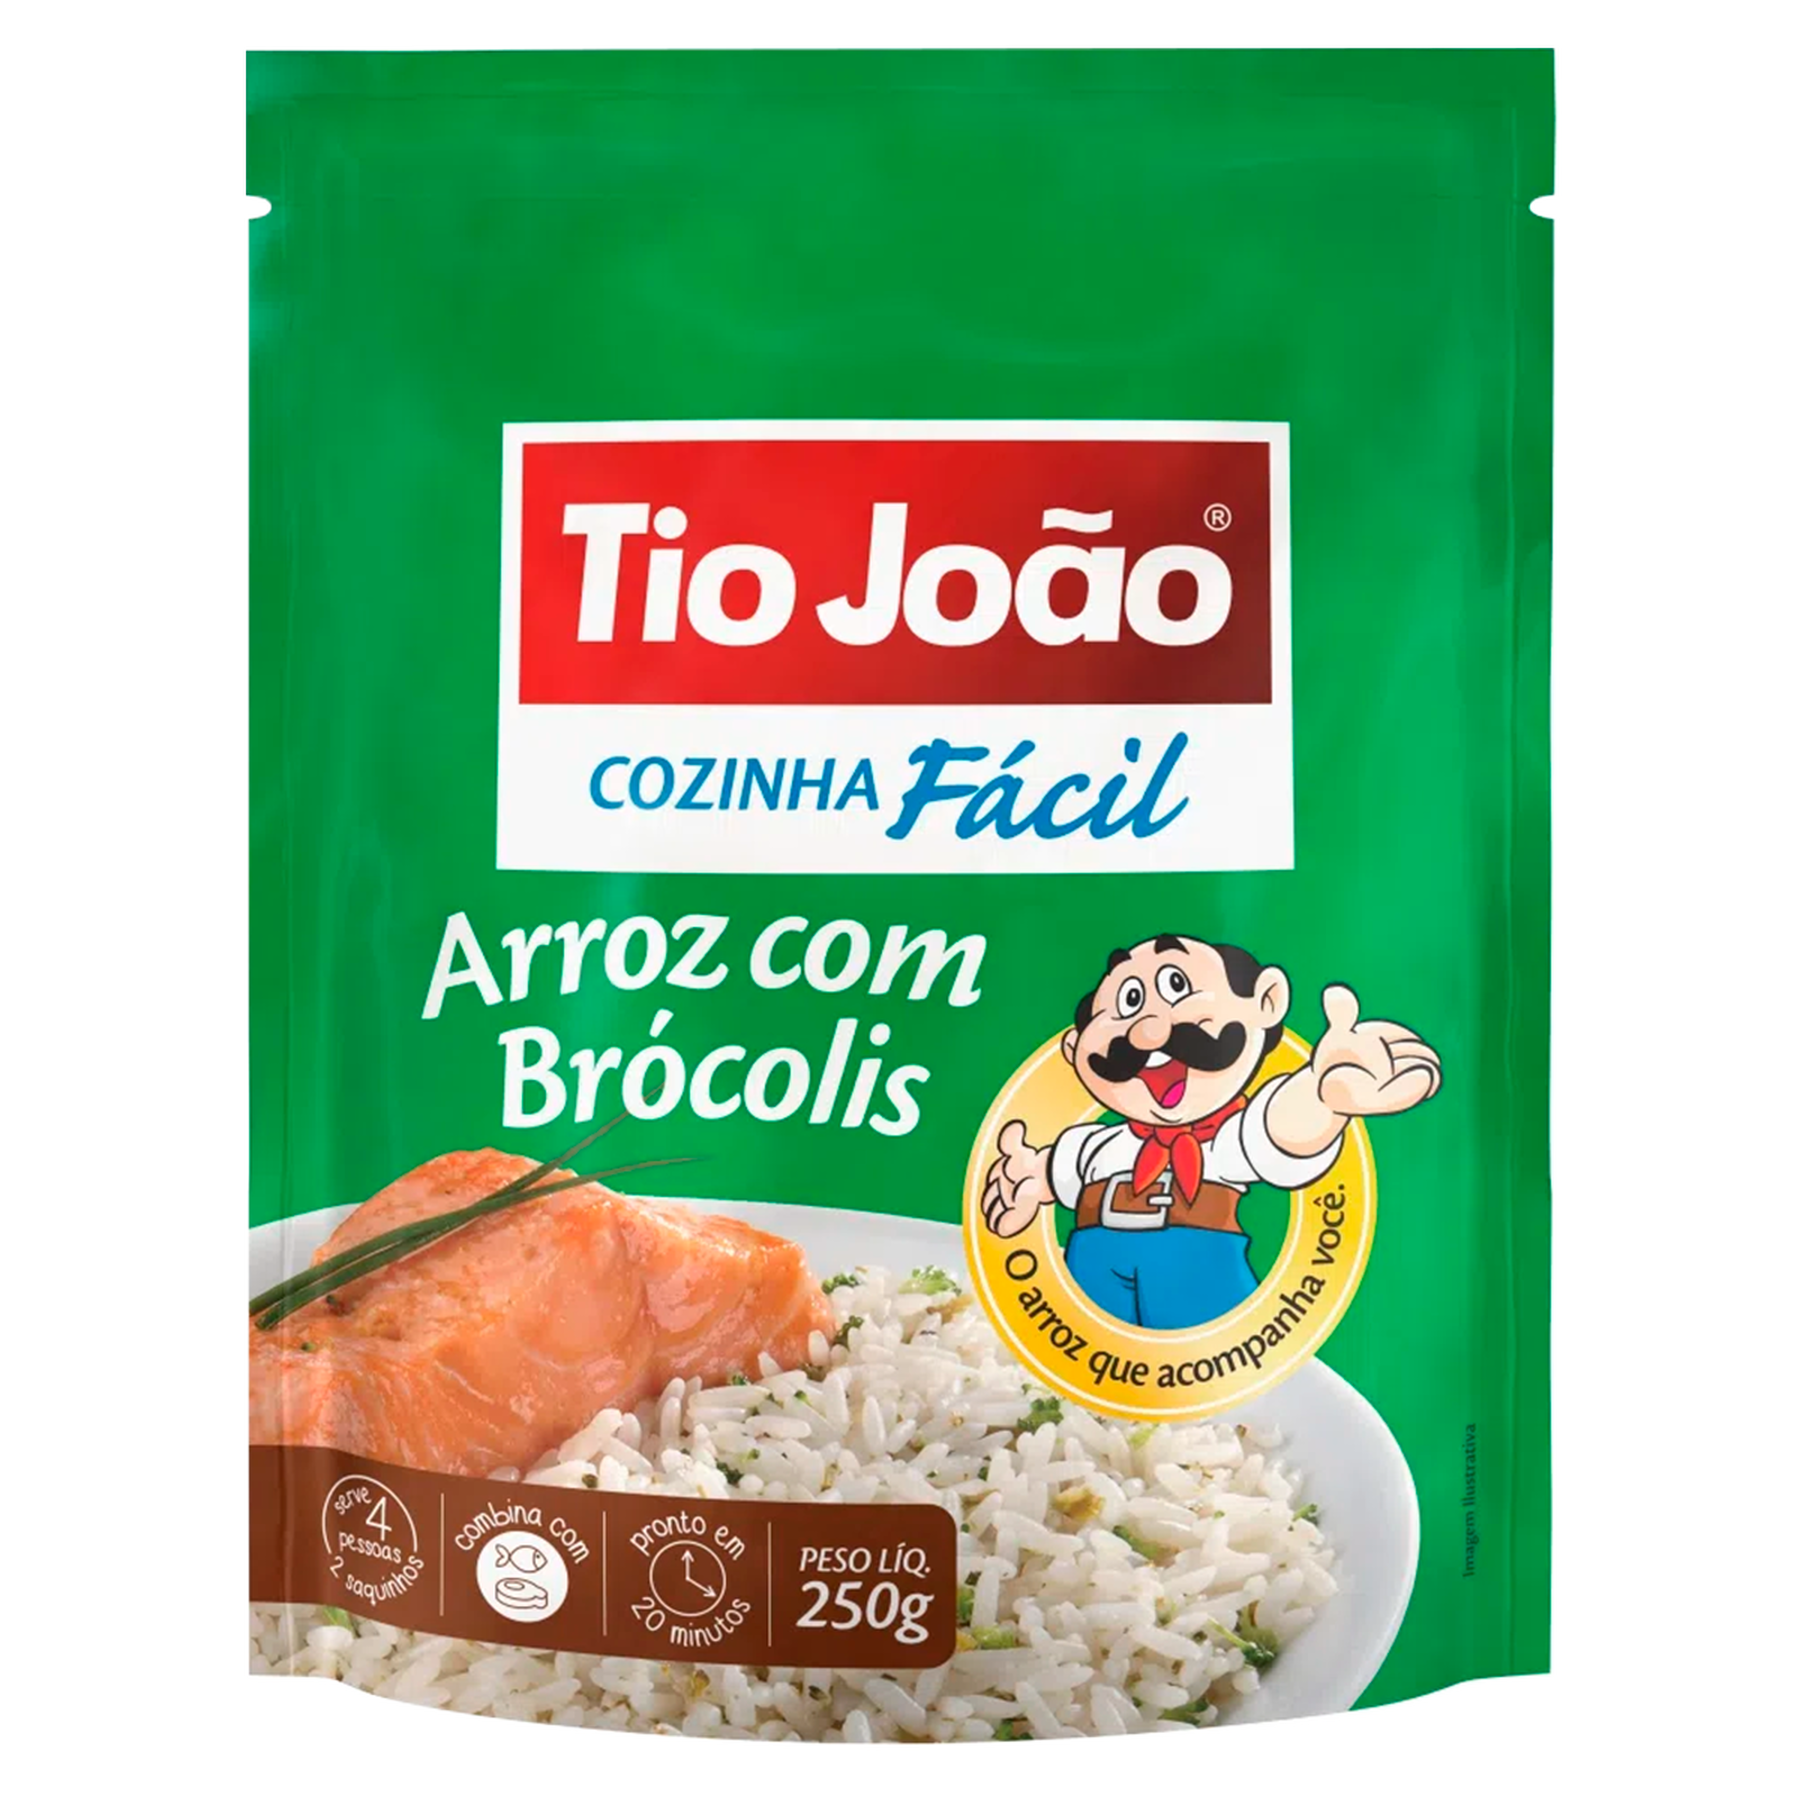 Arroz com Brócolis Tio João Pacote 250g